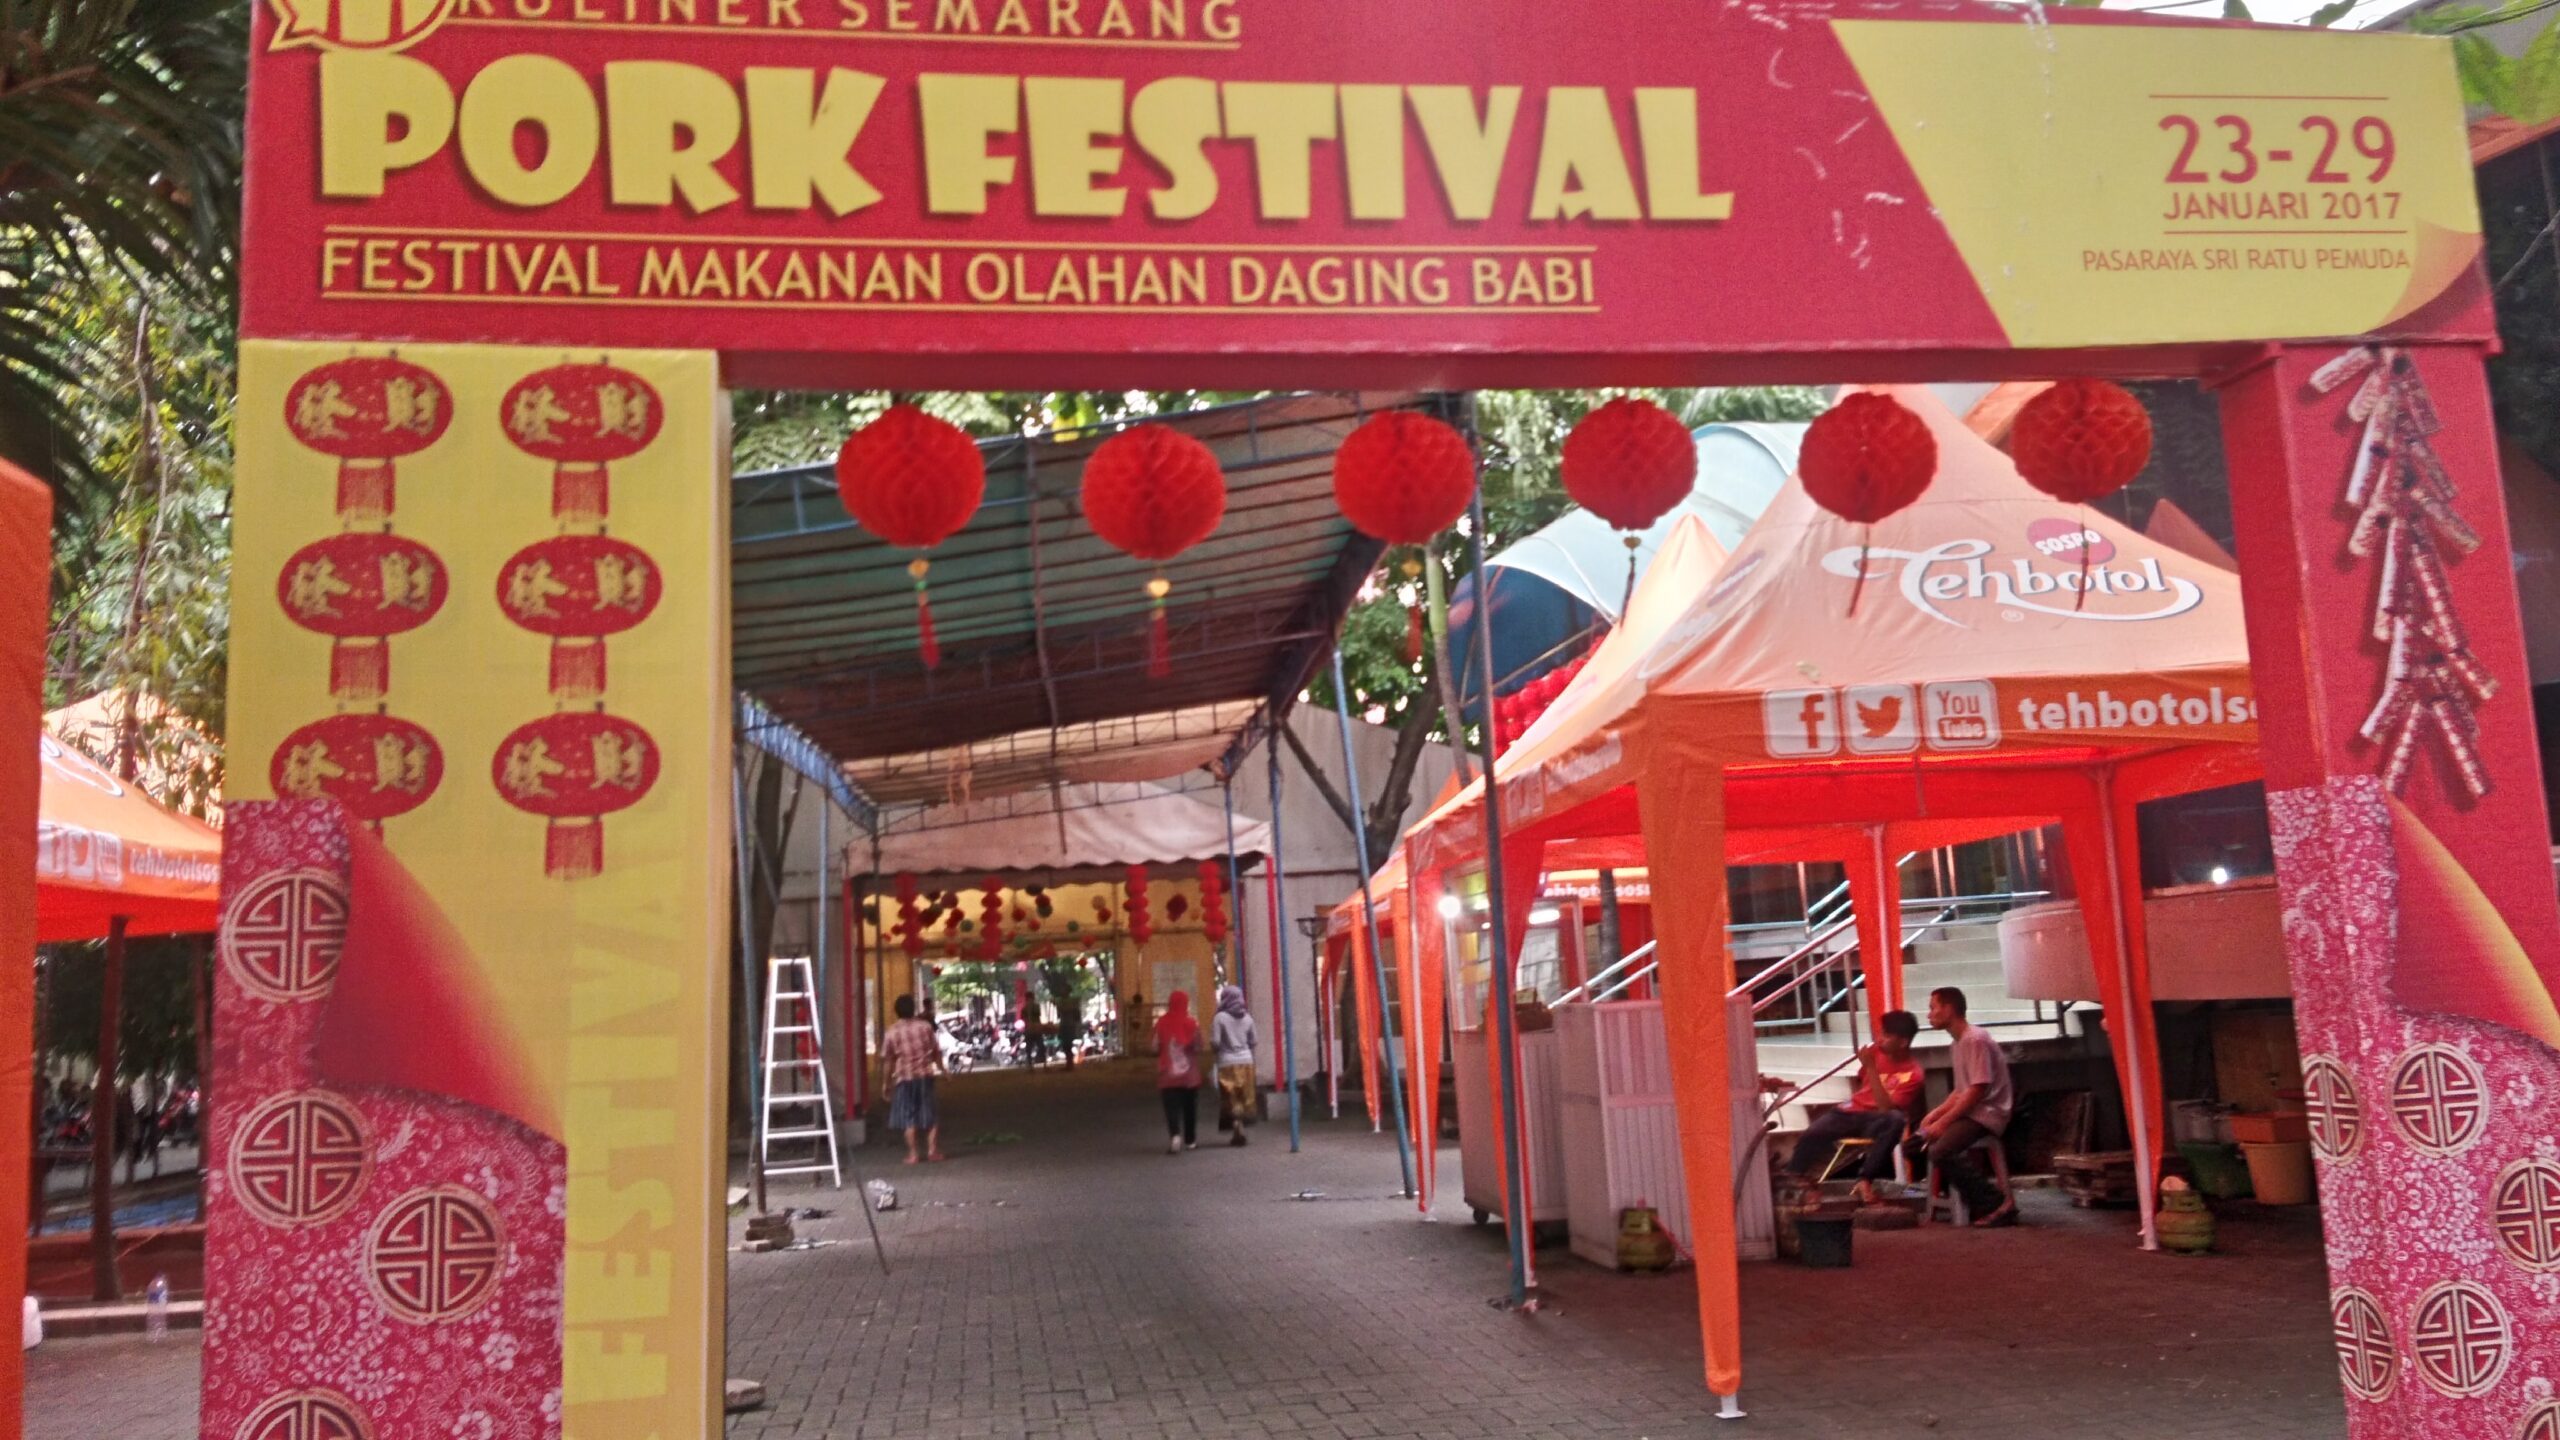 Forum Umat Islam Semarang ancam gagalkan festival makan babi